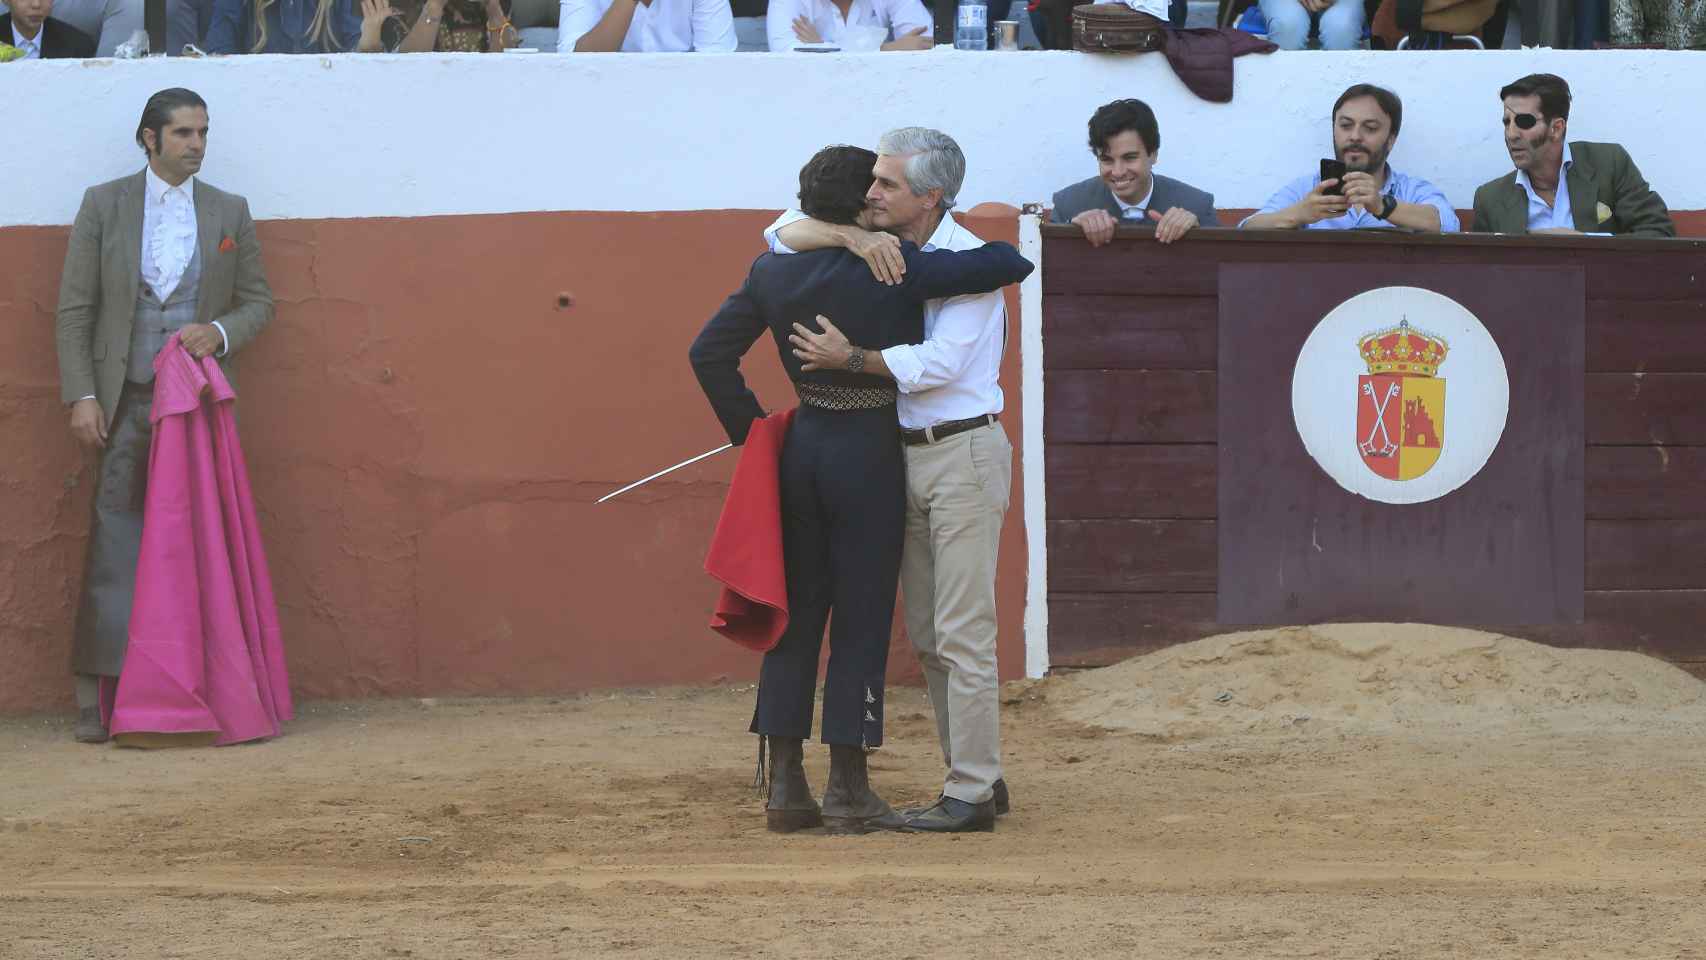 Adolfo Suárez Illana, visiblemente emocionado, abraza a su hijo antes de la faena.